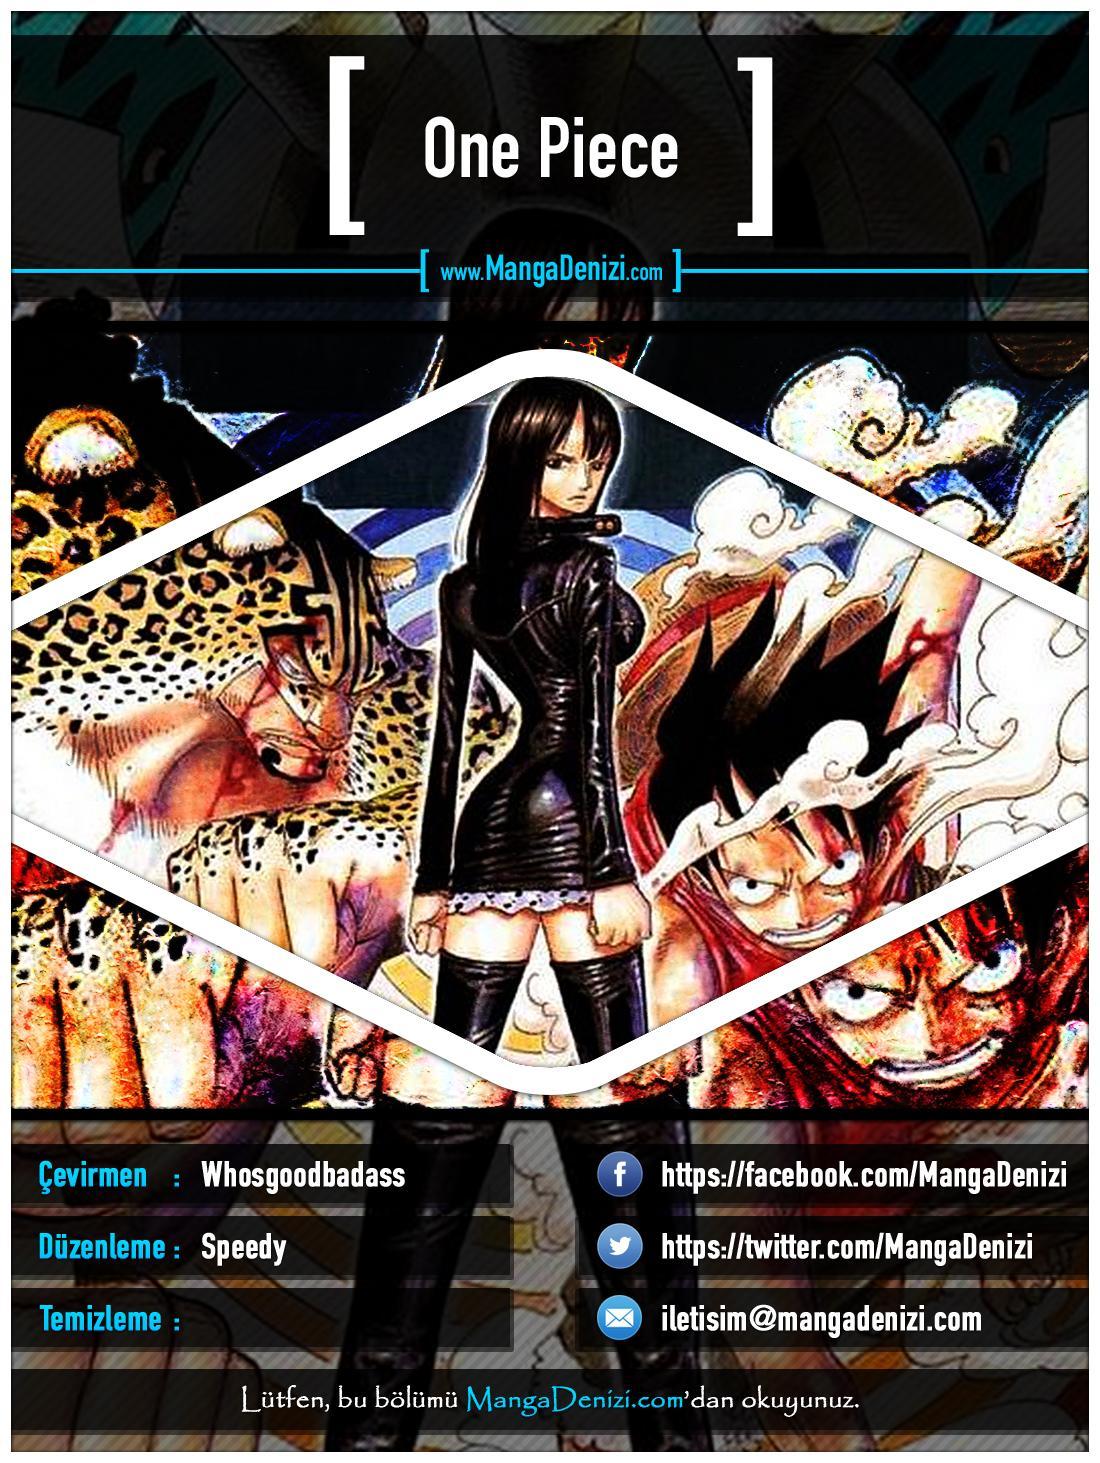 One Piece [Renkli] mangasının 0331 bölümünün 1. sayfasını okuyorsunuz.